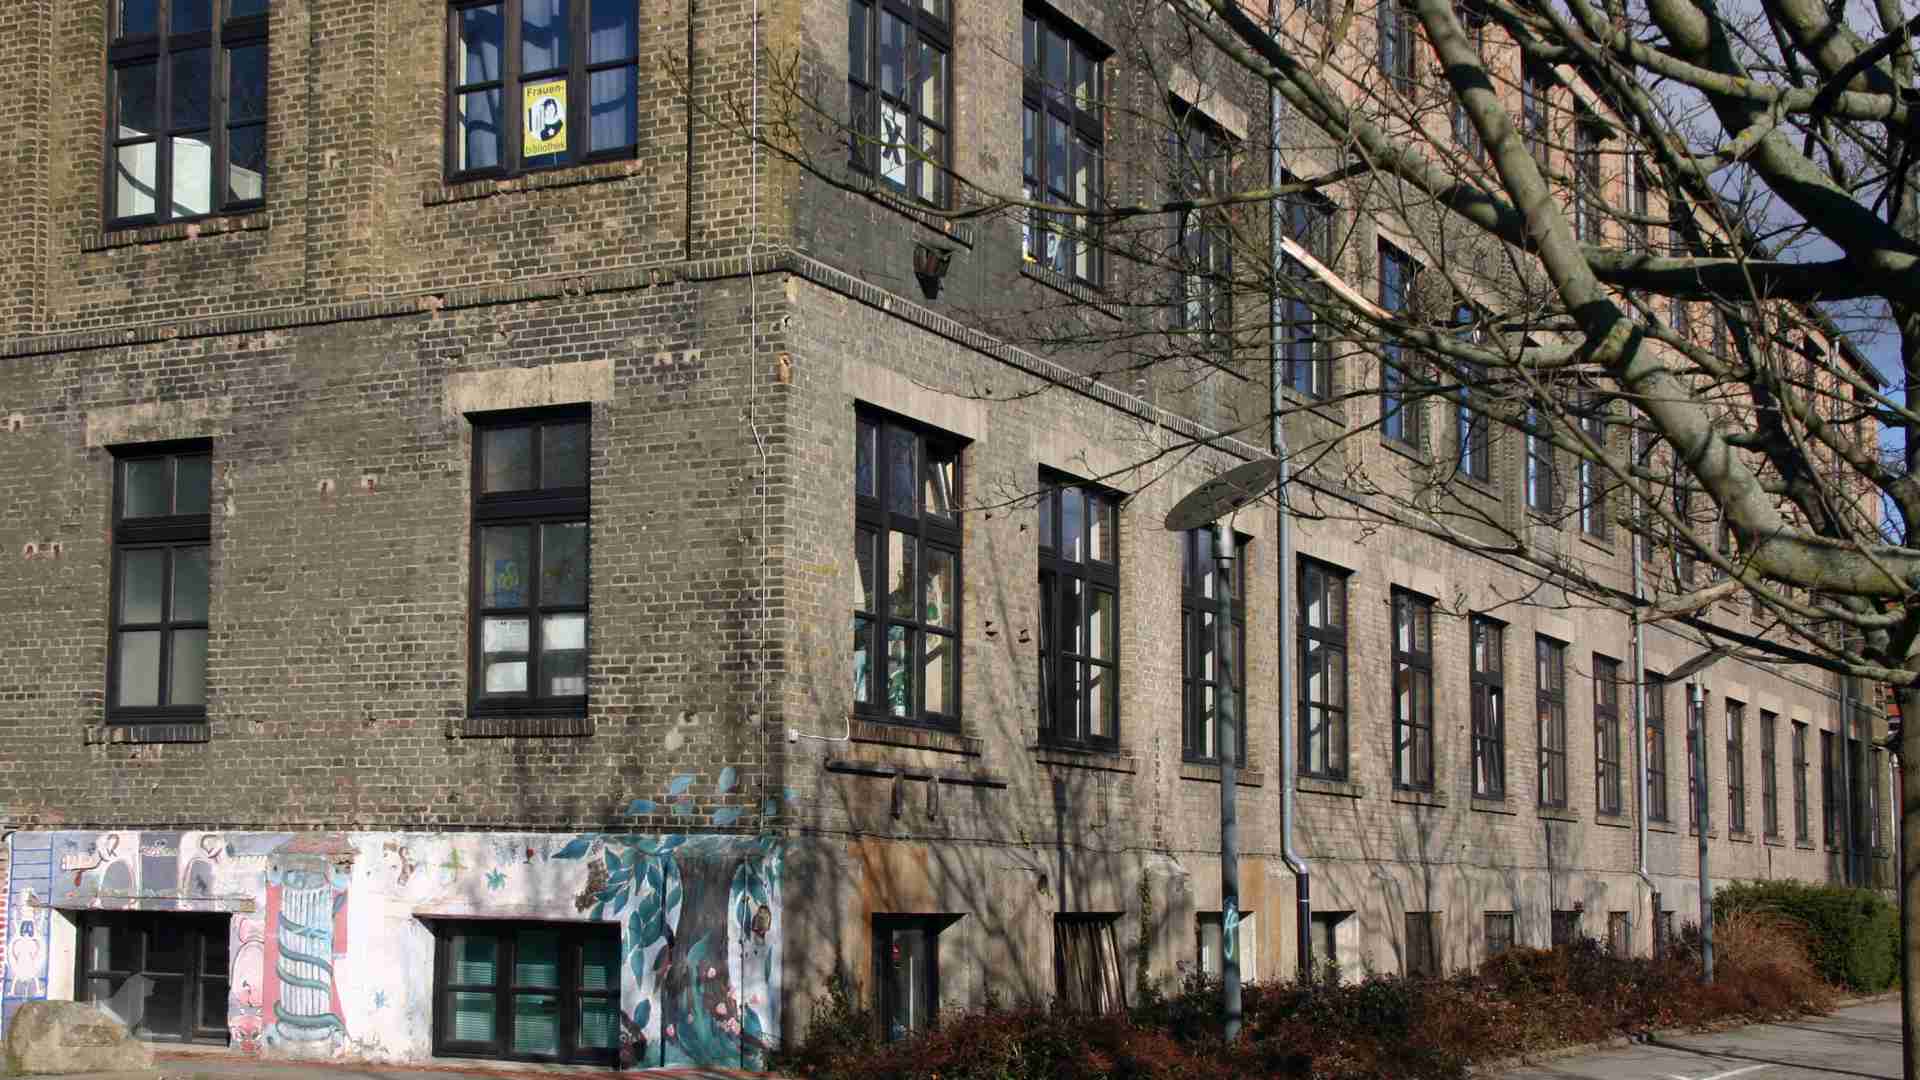 ehemalige Piano-Fabrik Grotian-Steinweg (heute TU Braunschweig)